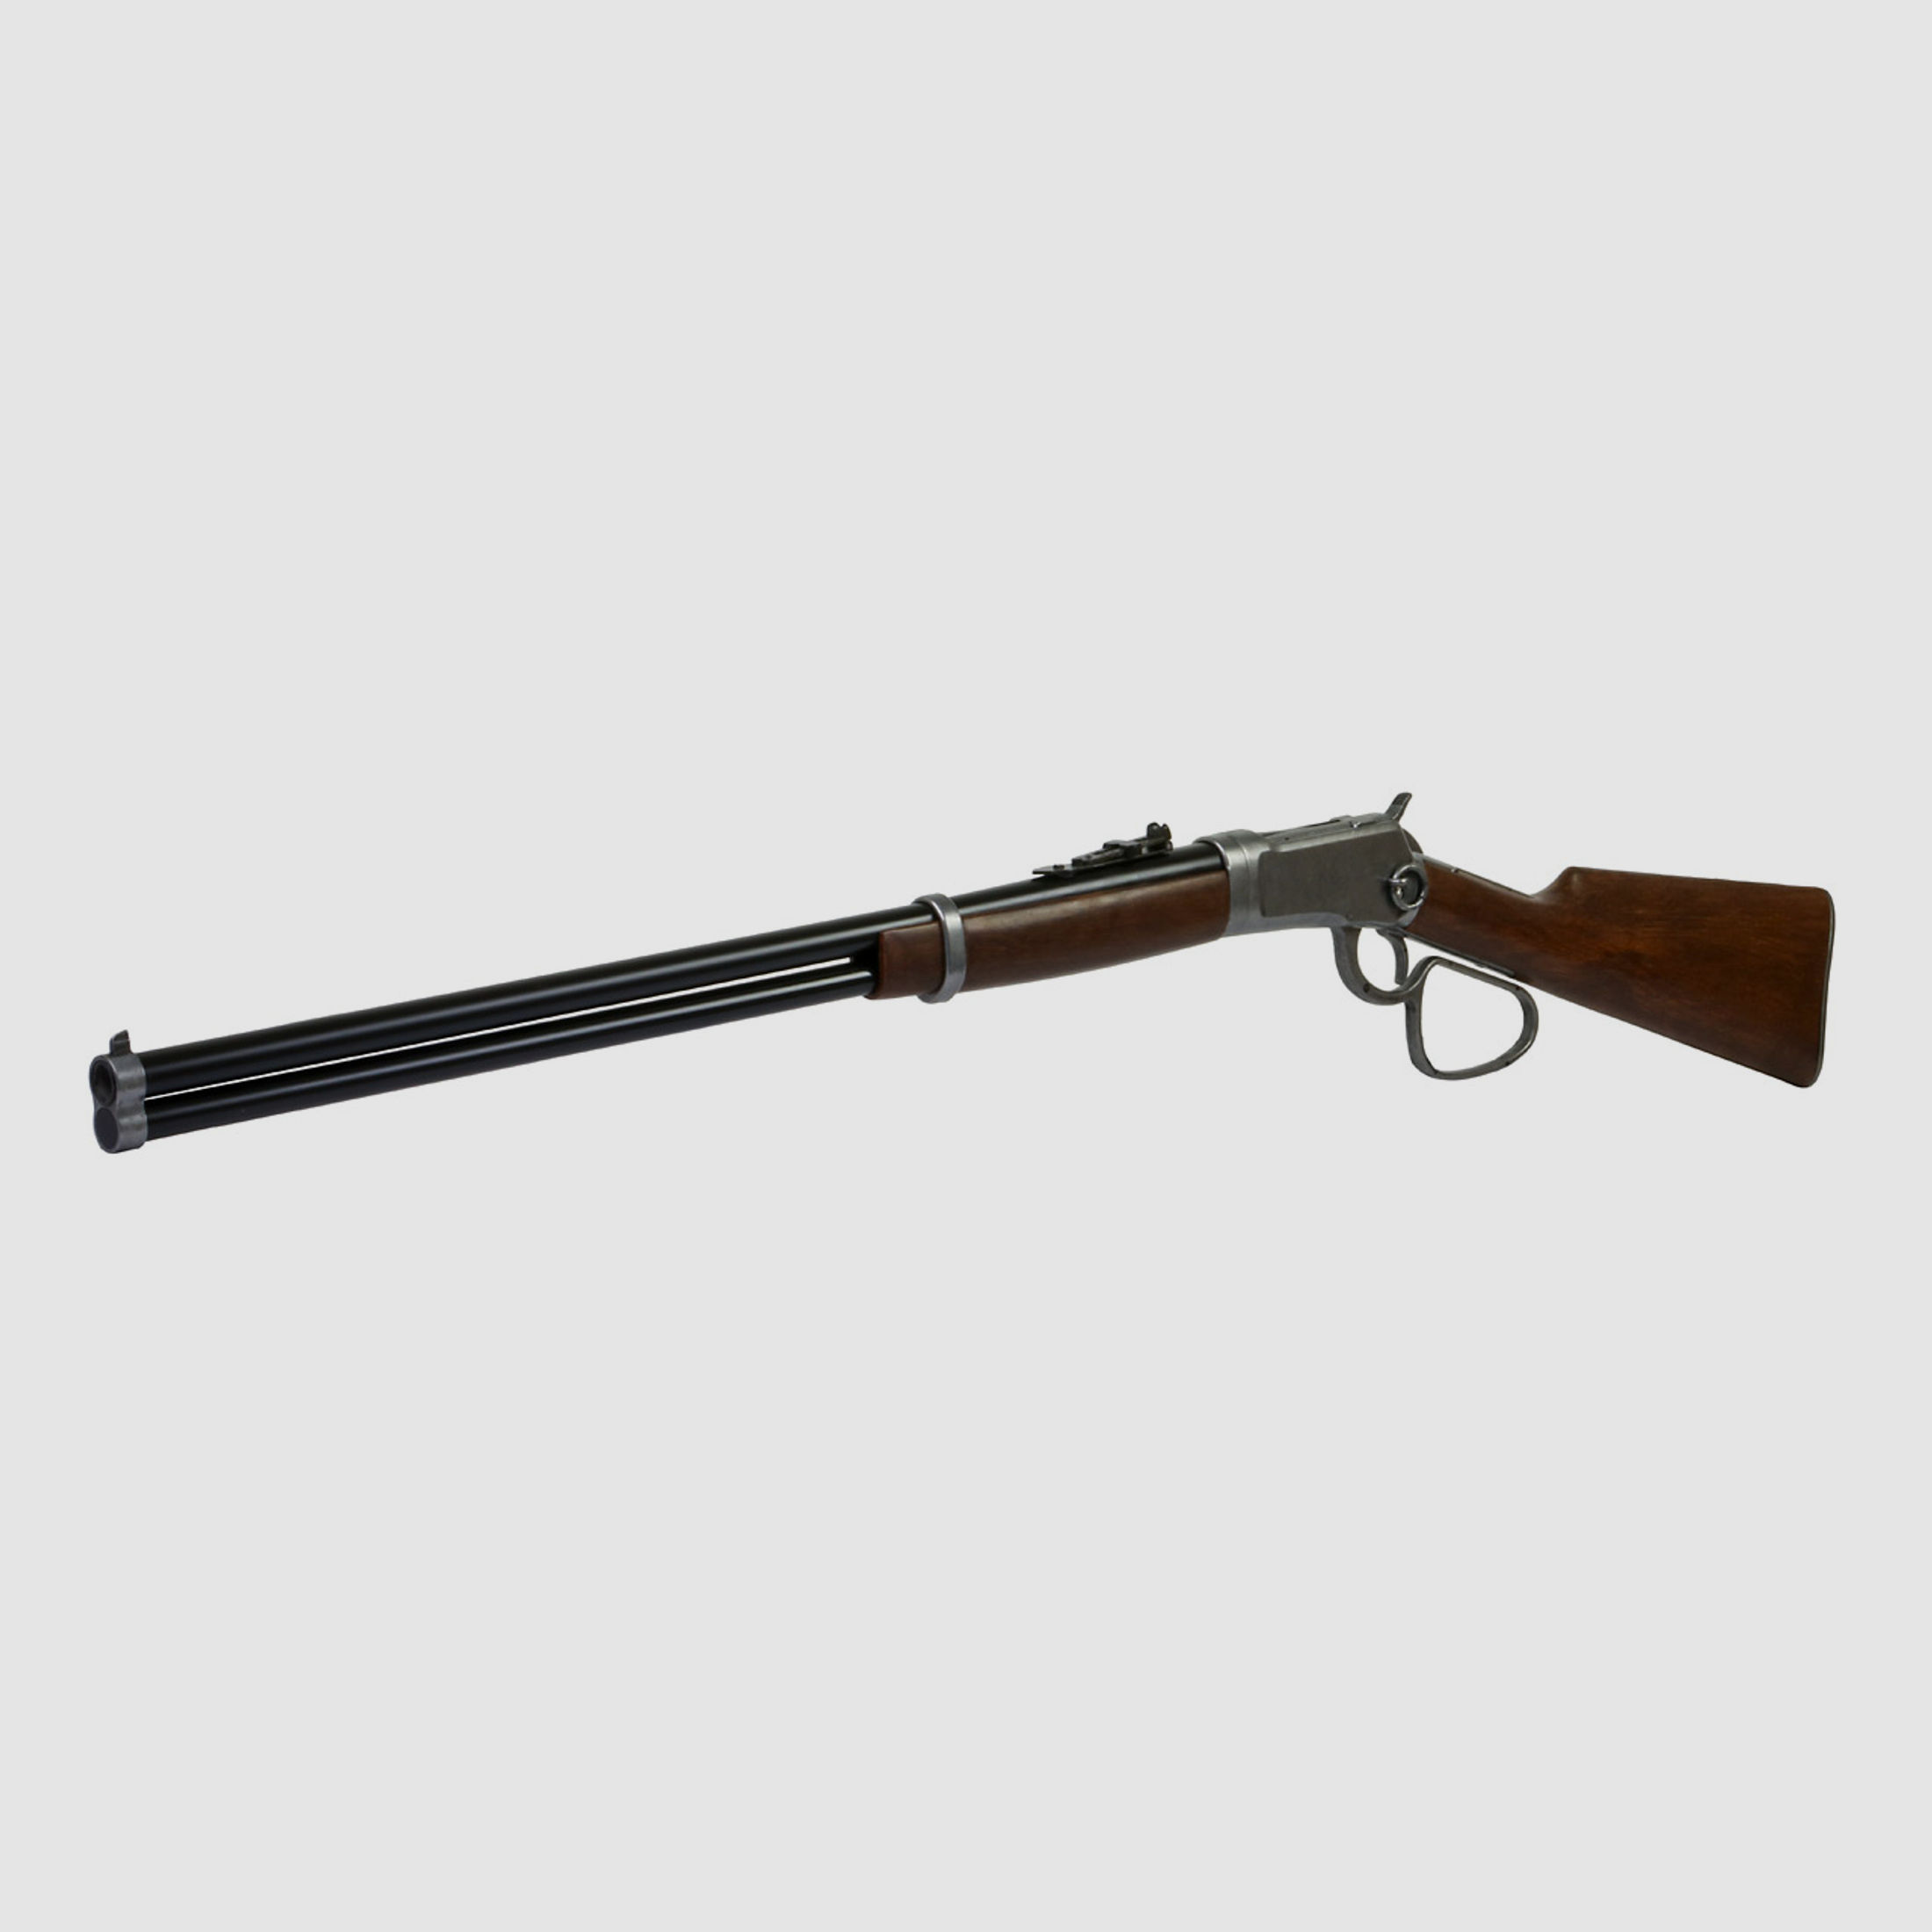 B-Ware Deko Westerngewehr Kolser Winchester 92 Carbine Long Range USA 1892 realistisches Repetieren mit HĂĽlsenauswurf LĂ¤nge 108 cm altgrau